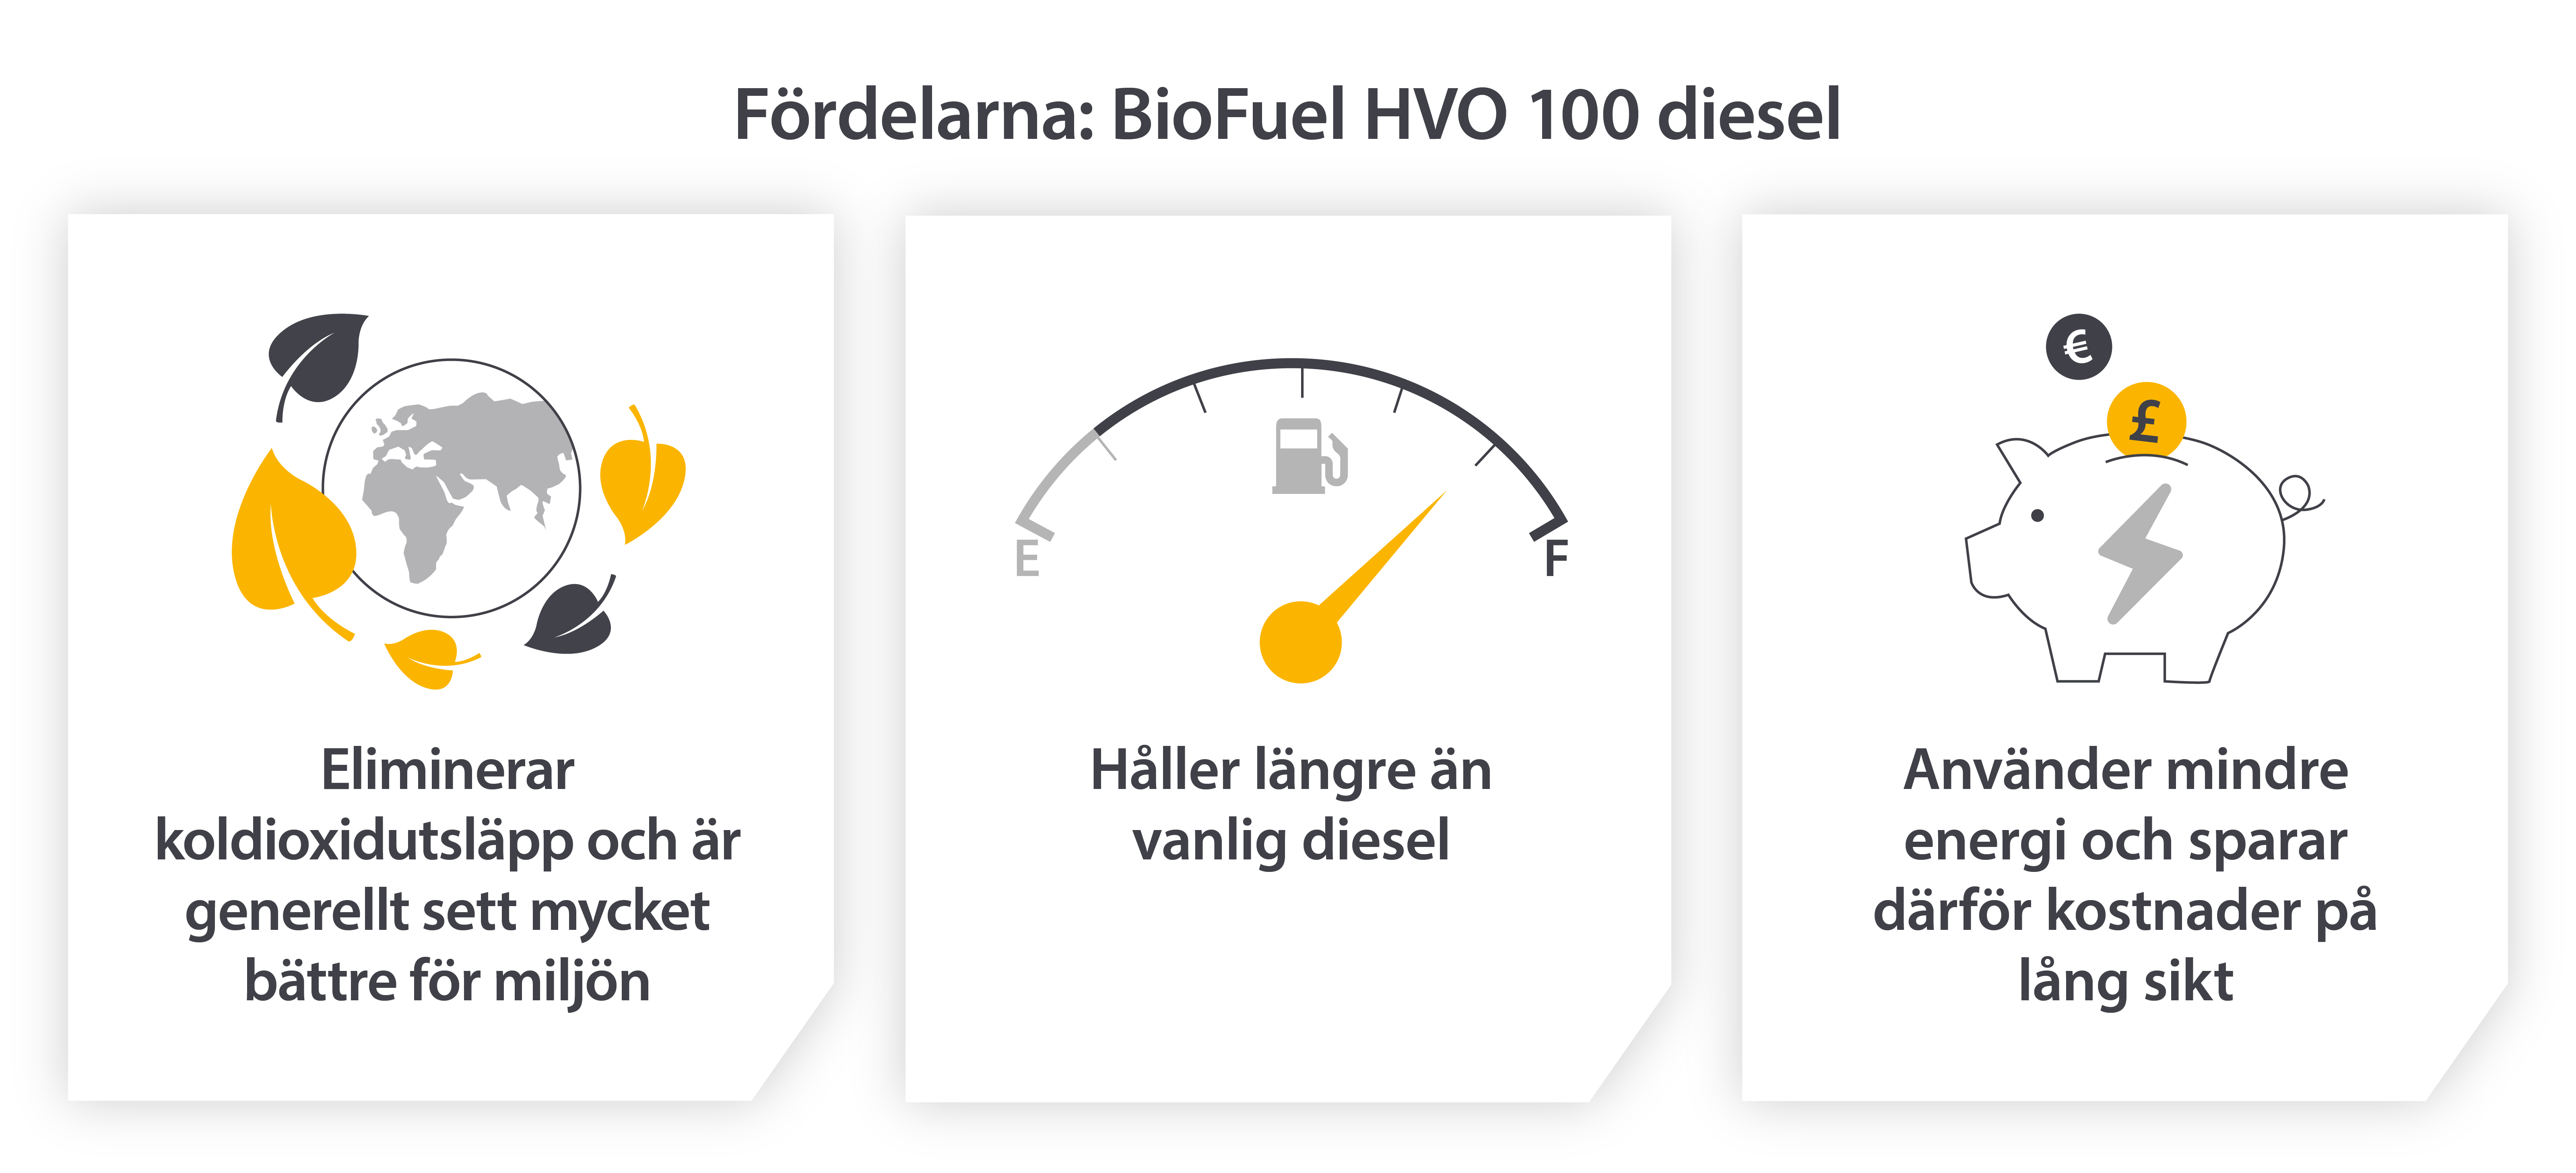 Fördelarna med fossilfri HVO 100‑diesel